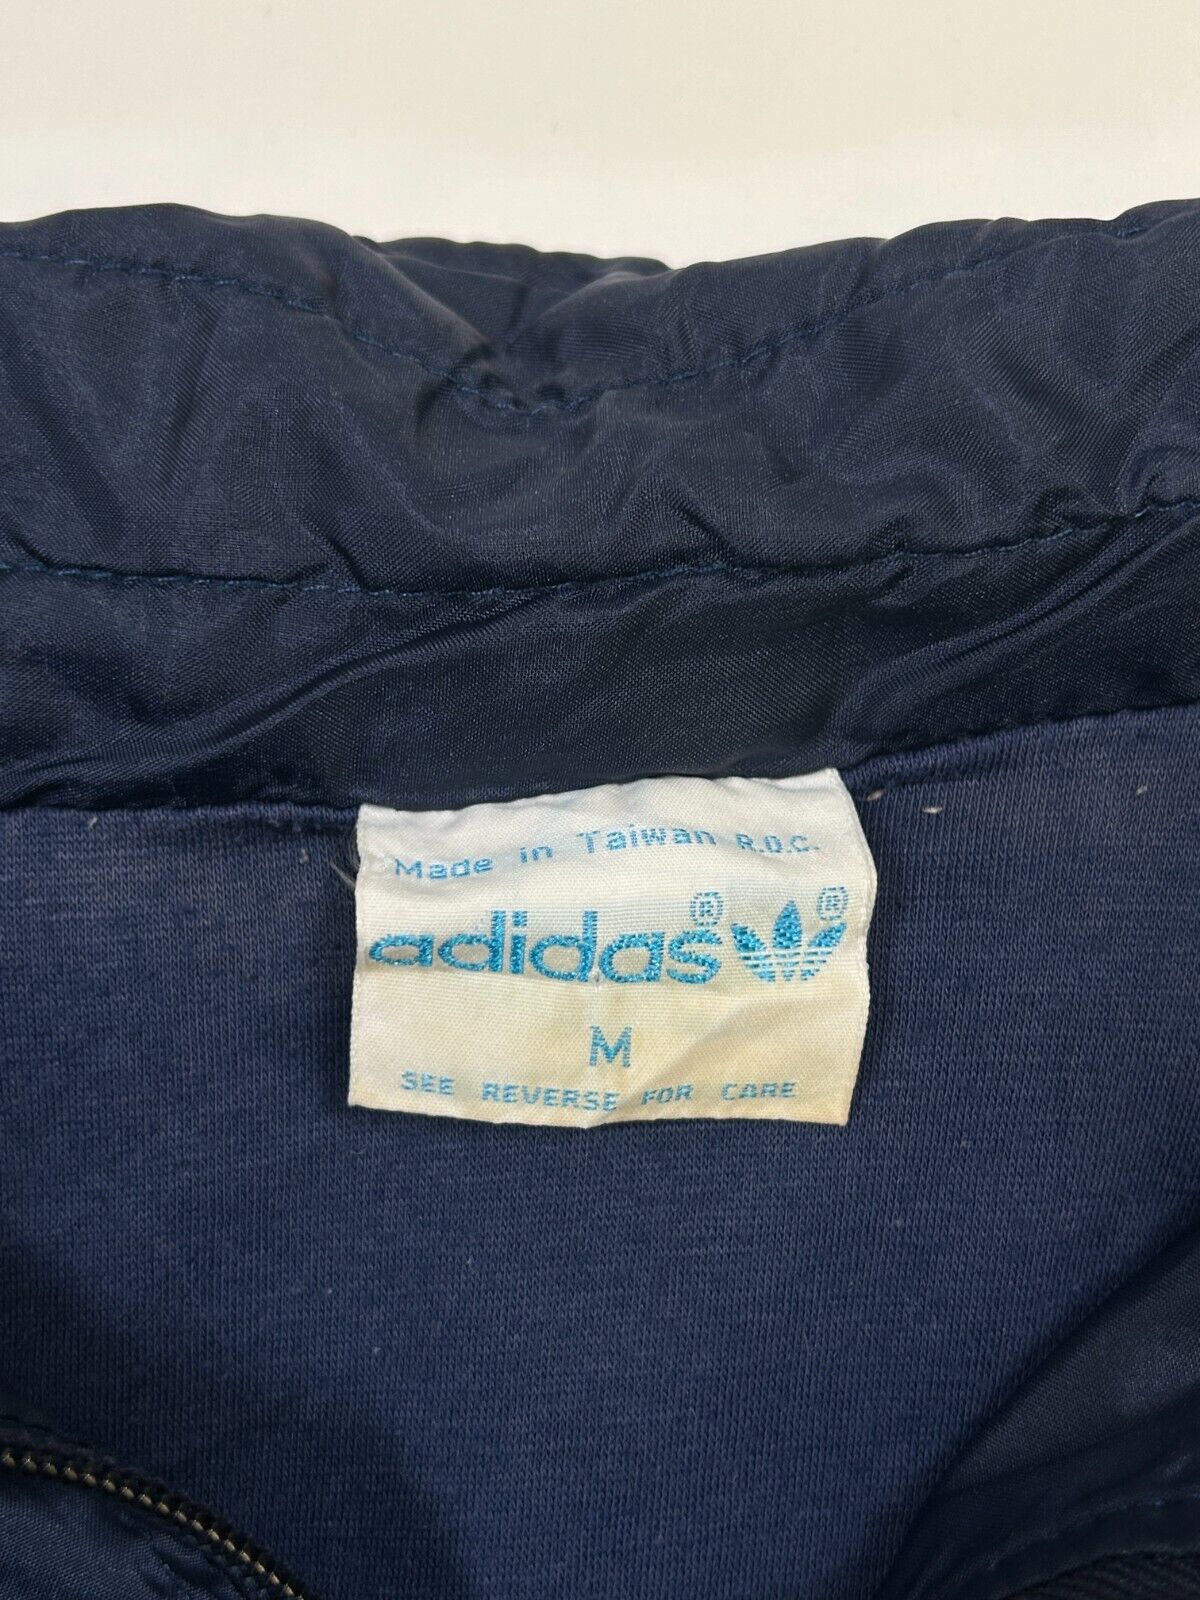 Vintage 80s Adidas Embroidered Trey Foil 3 Stripe Windbreaker Jacket Size Medium